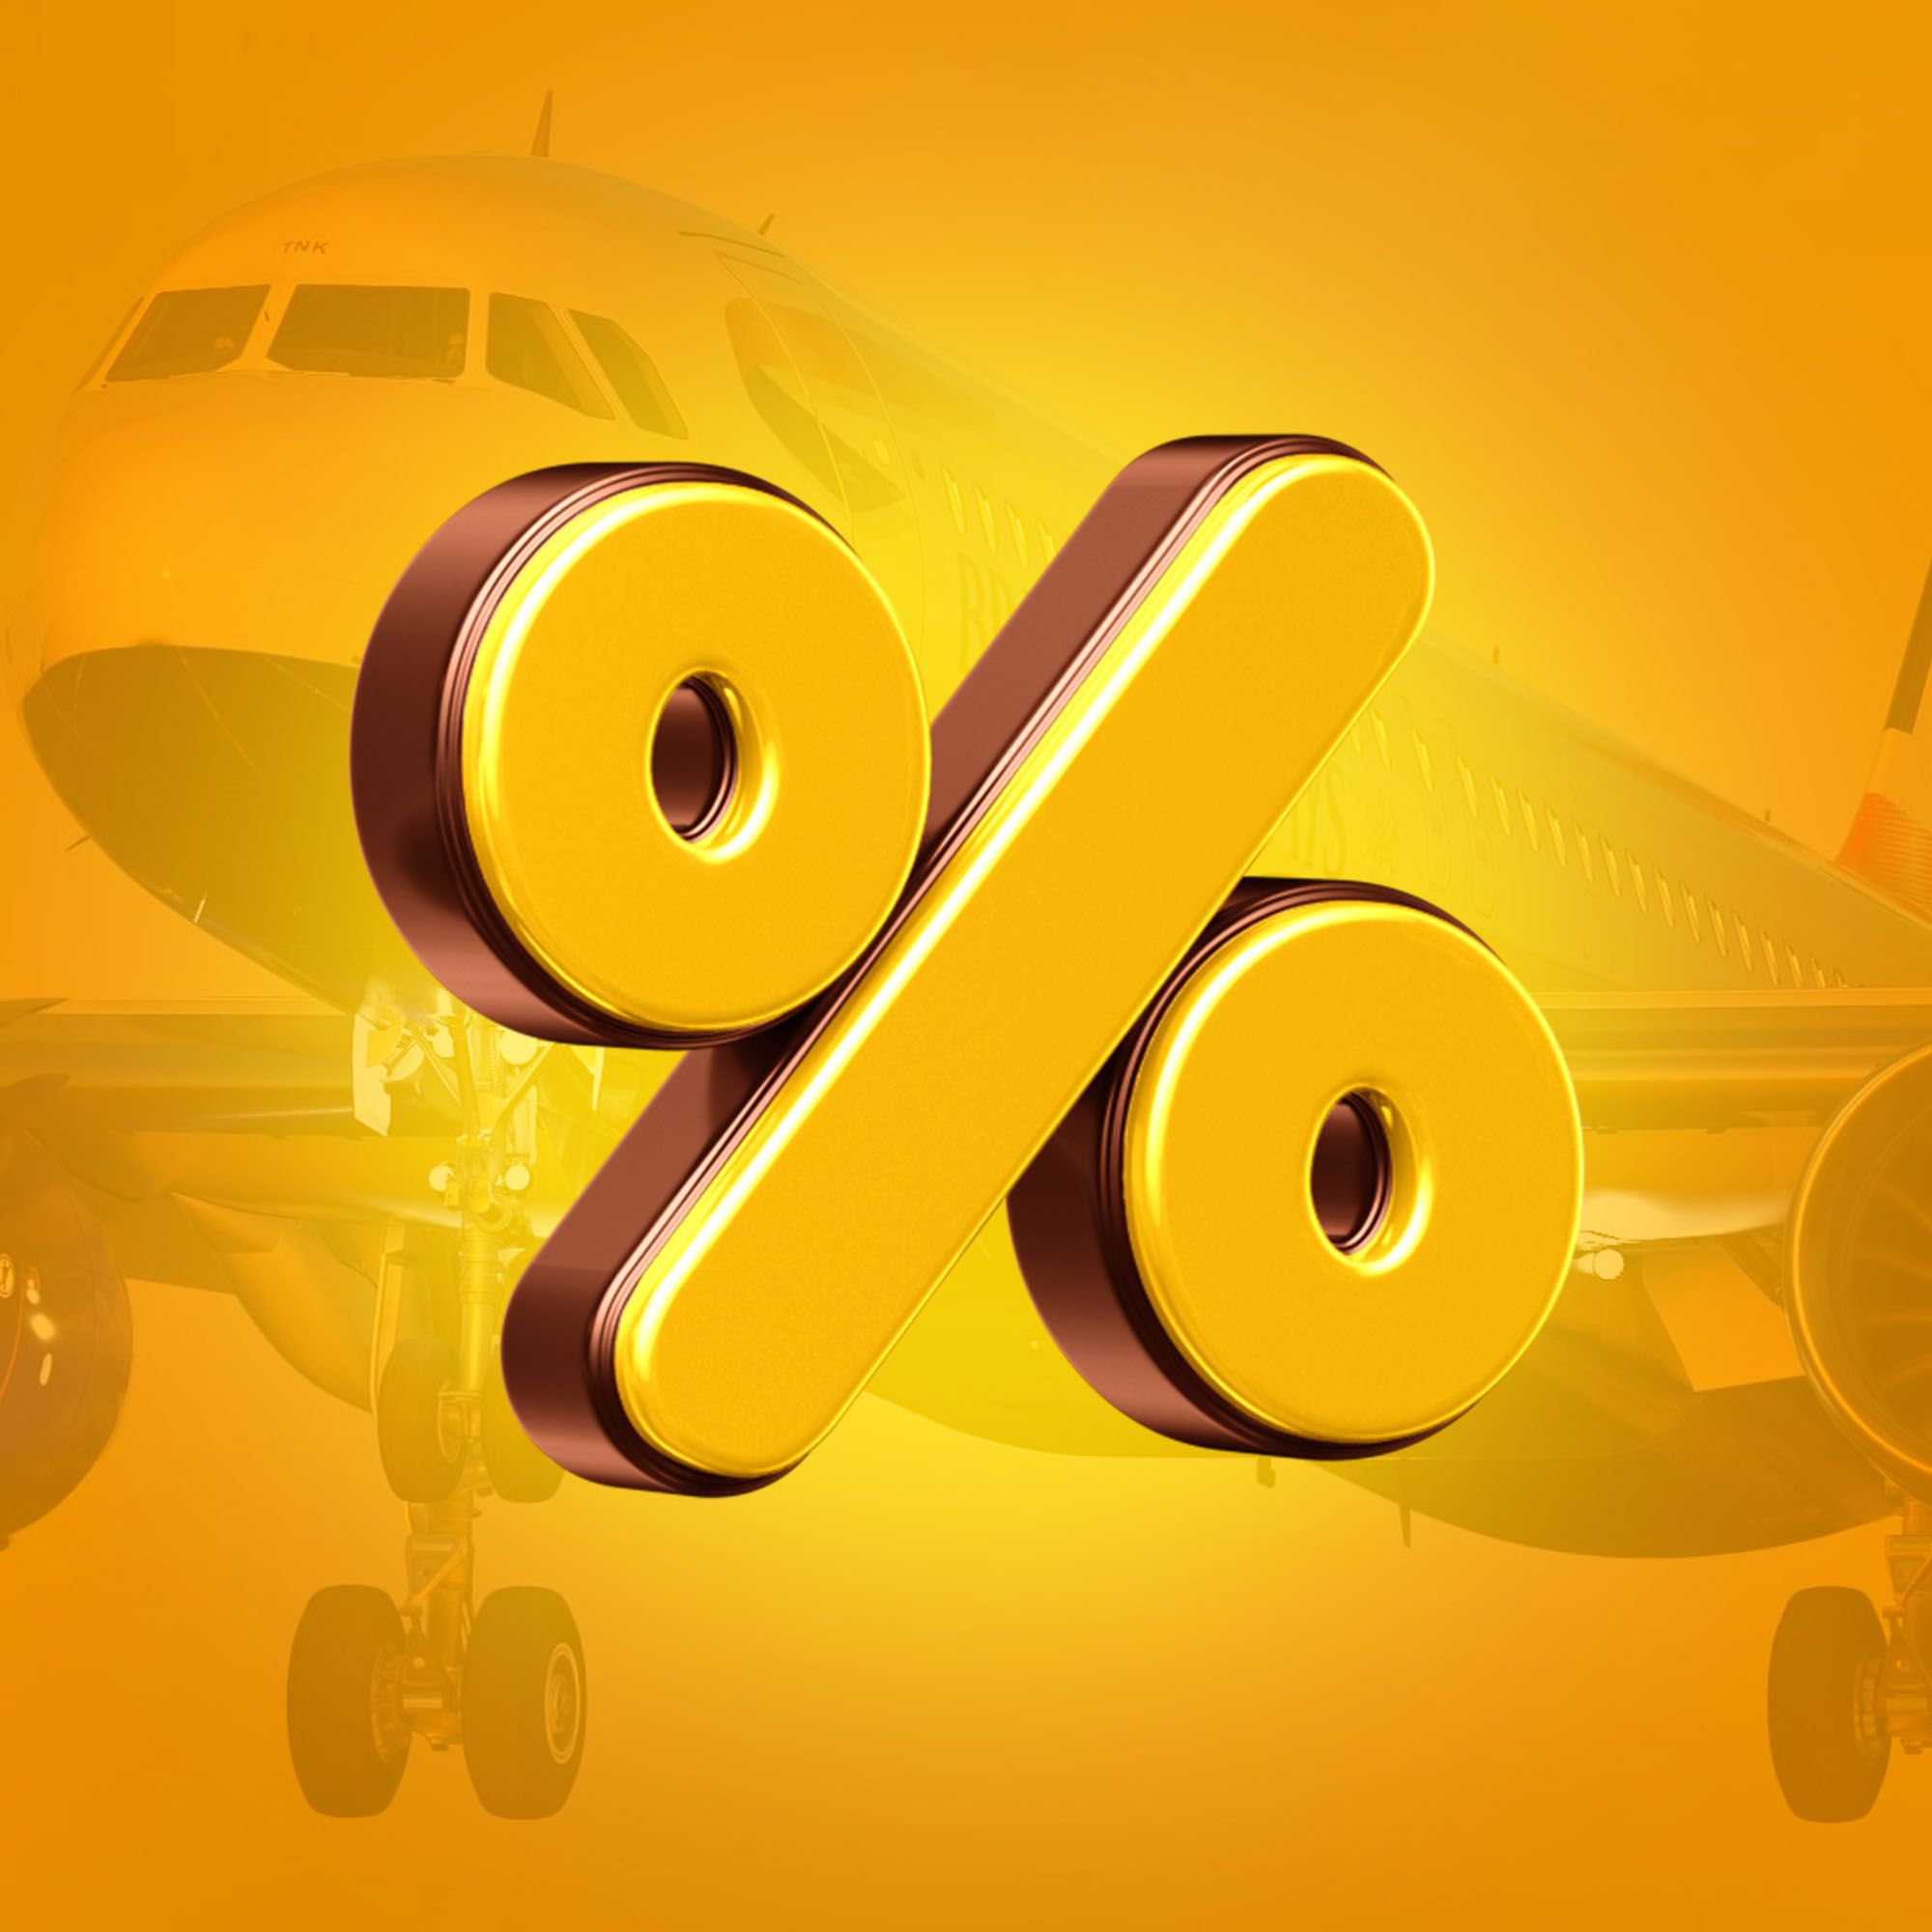 Vom Schrecken zum Flug: Sparen Sie 13% an diesem Freitag, dem 13